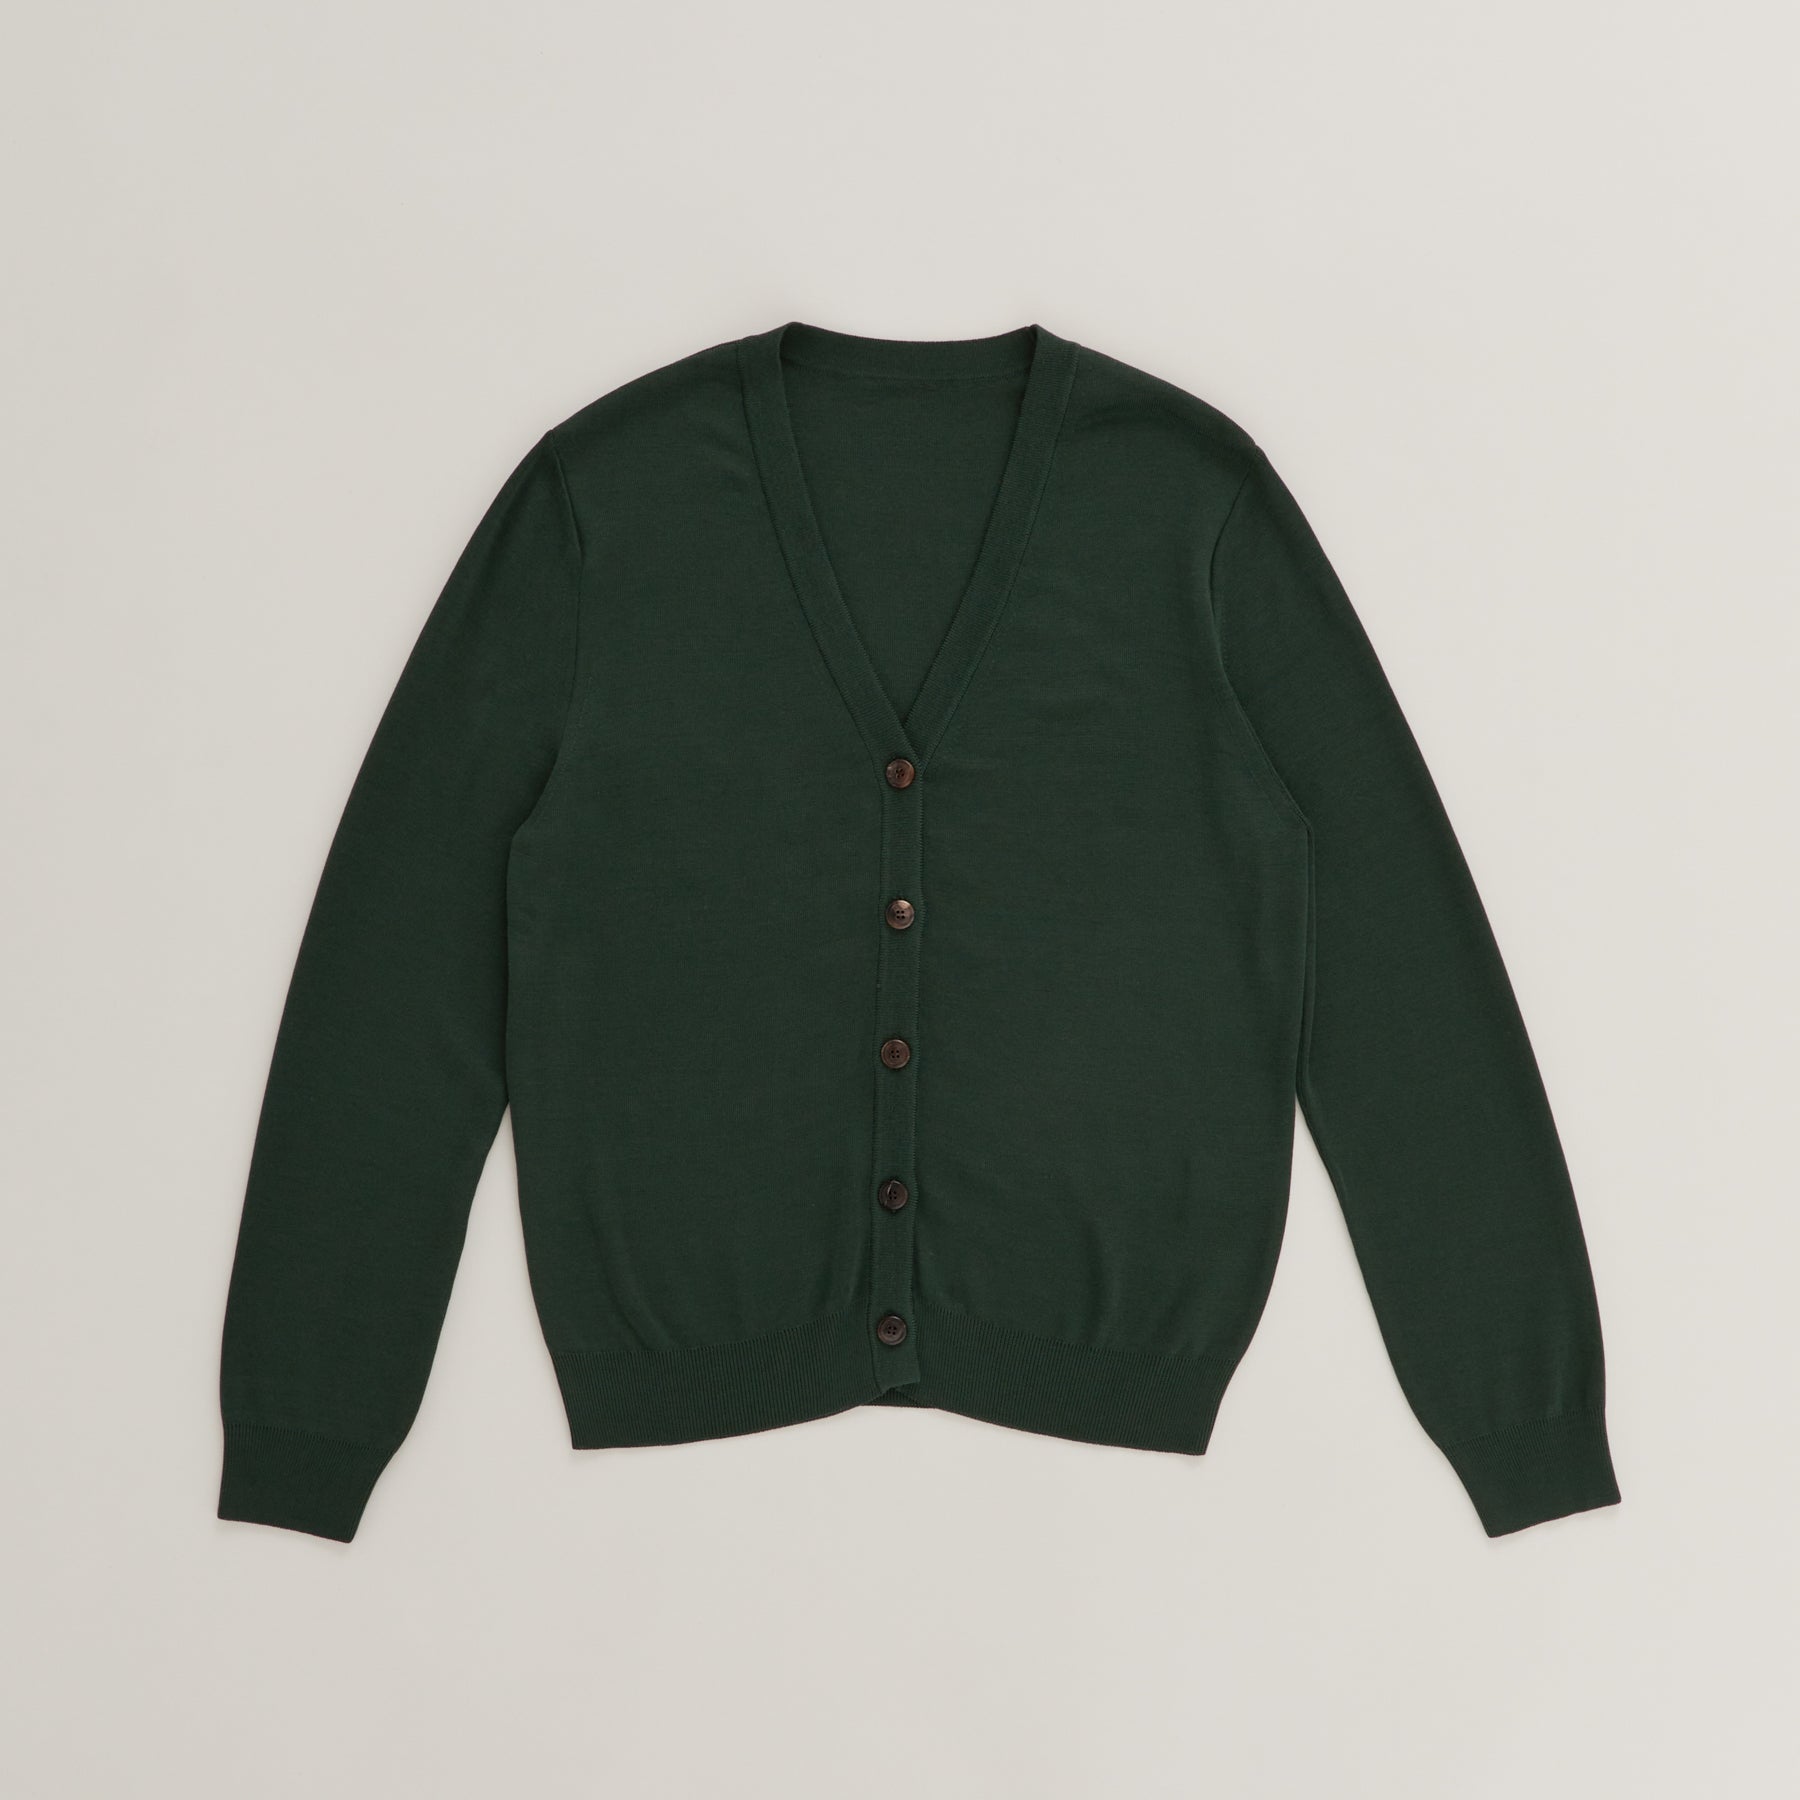 18G Full-Needles Silk Knit V-Neck Cardigan in Dark Green